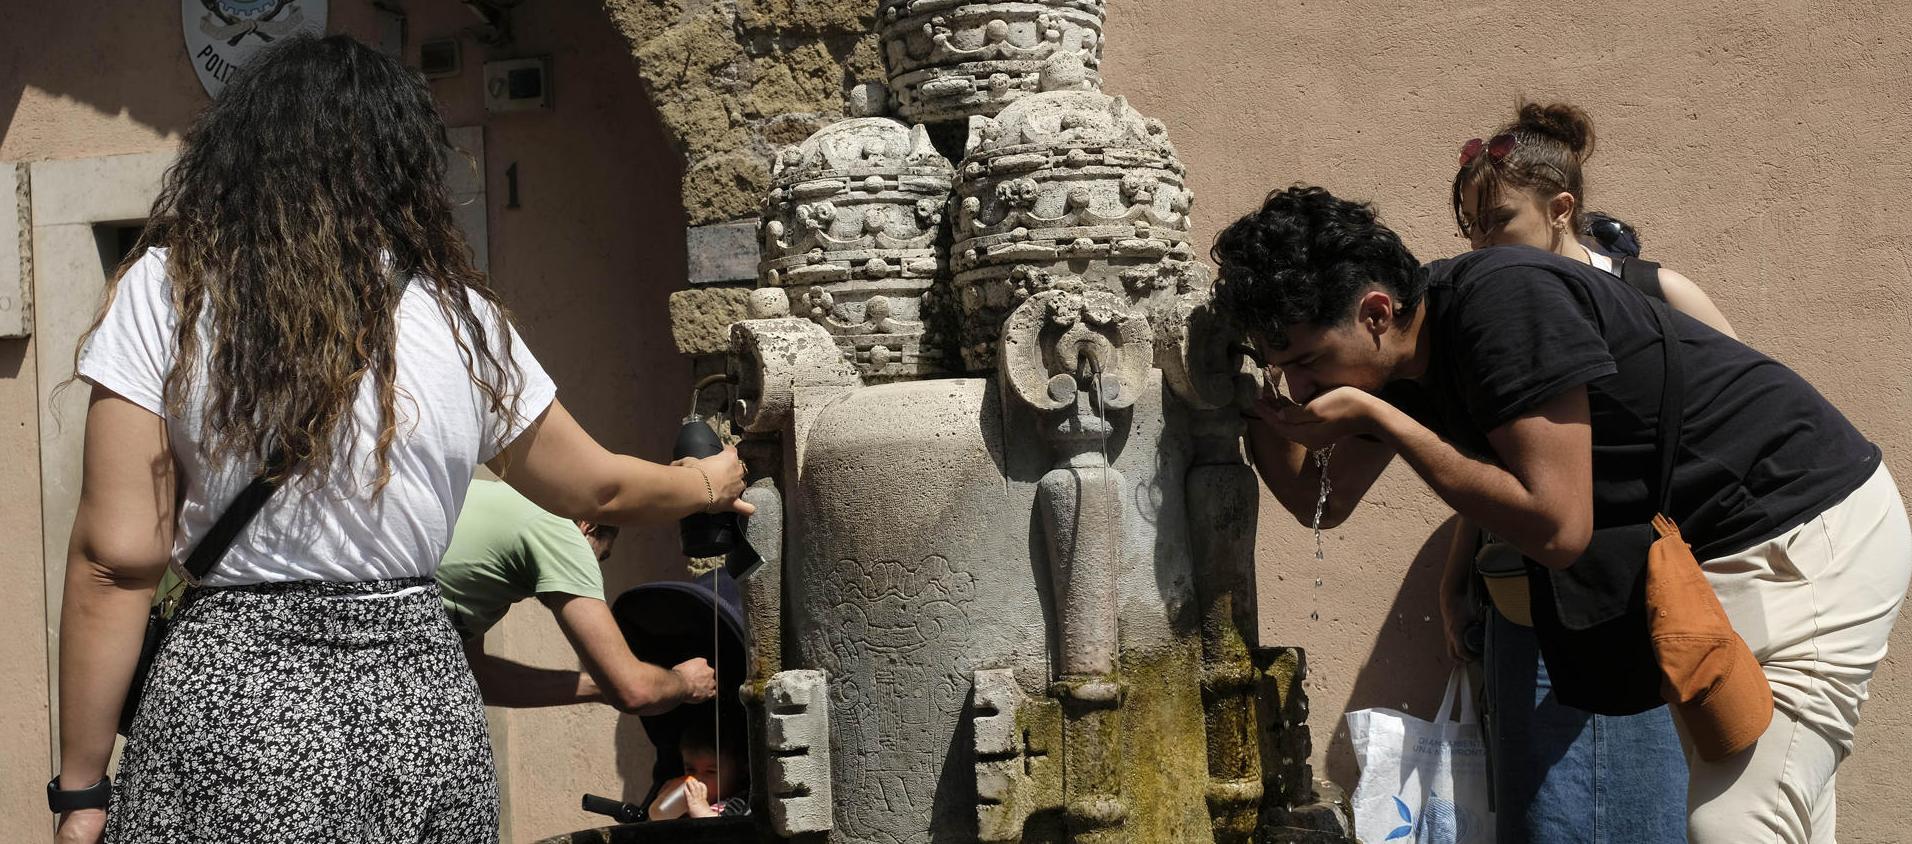 Varias personas se refrescan en una fuente en Roma, Italia.